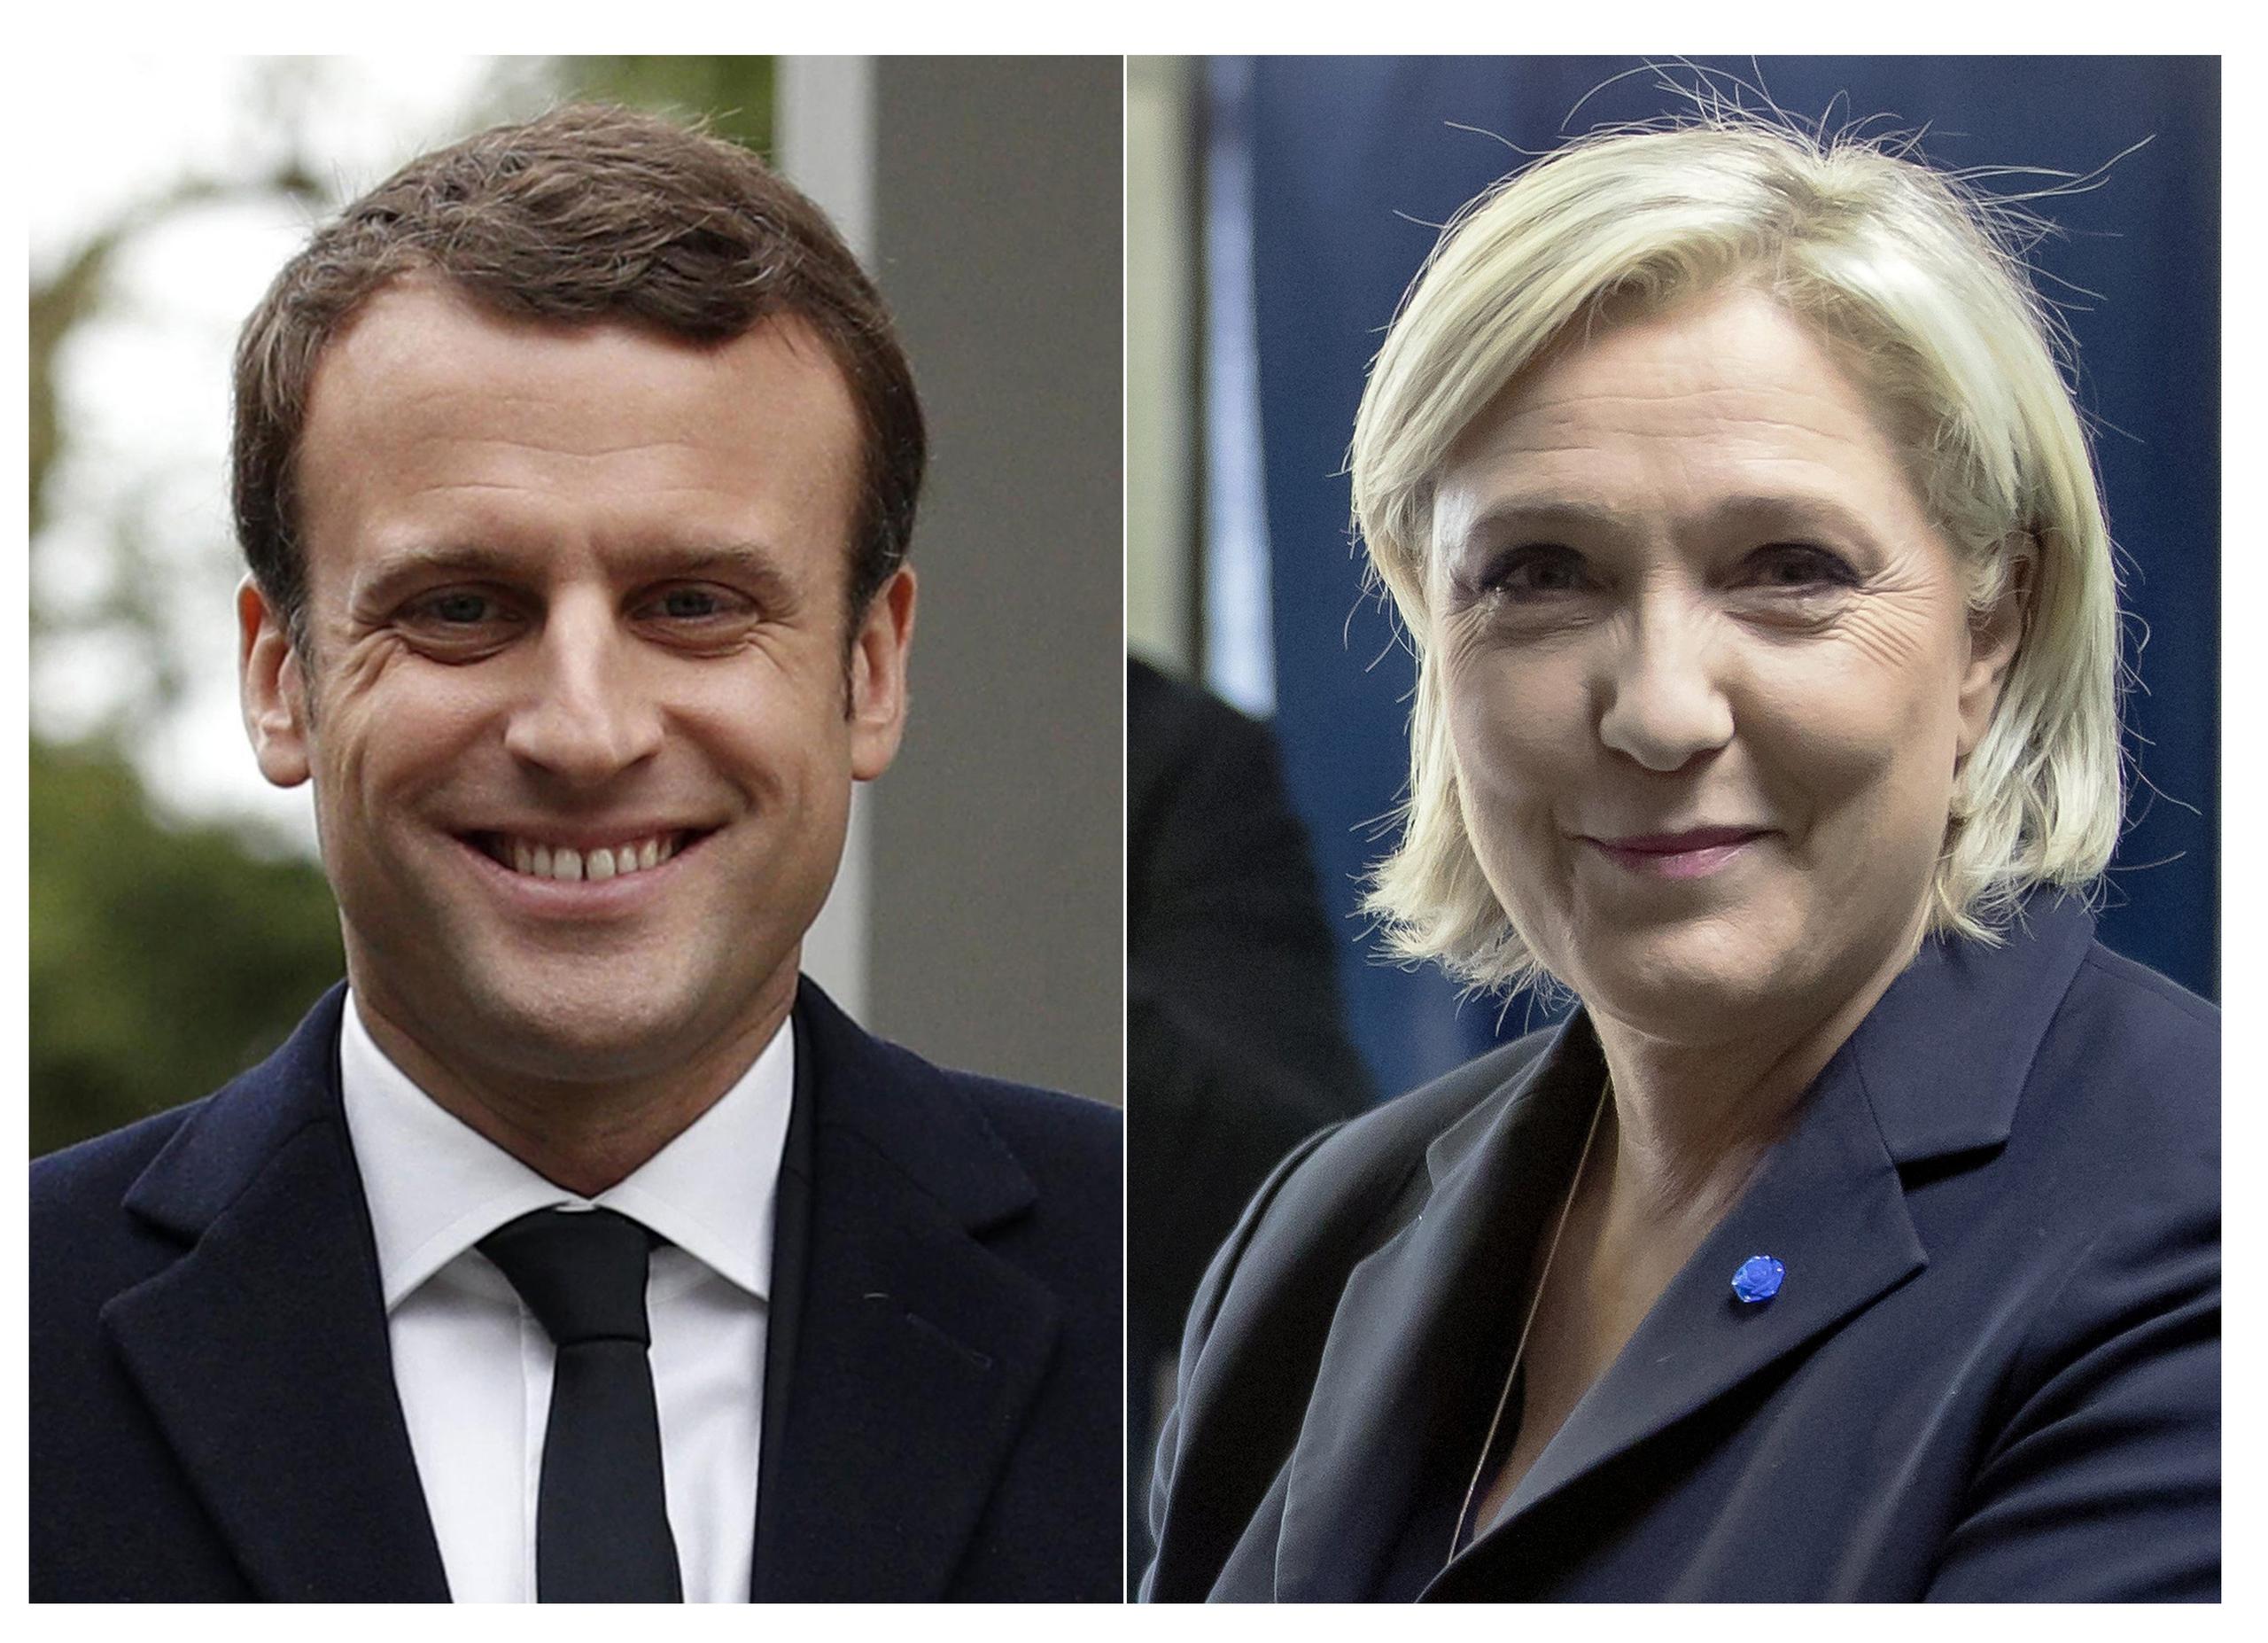 Le Pen promete sacar a Francia de la UE y Macron aboga a favor de una mayor cooperación con el bloque. (AP)